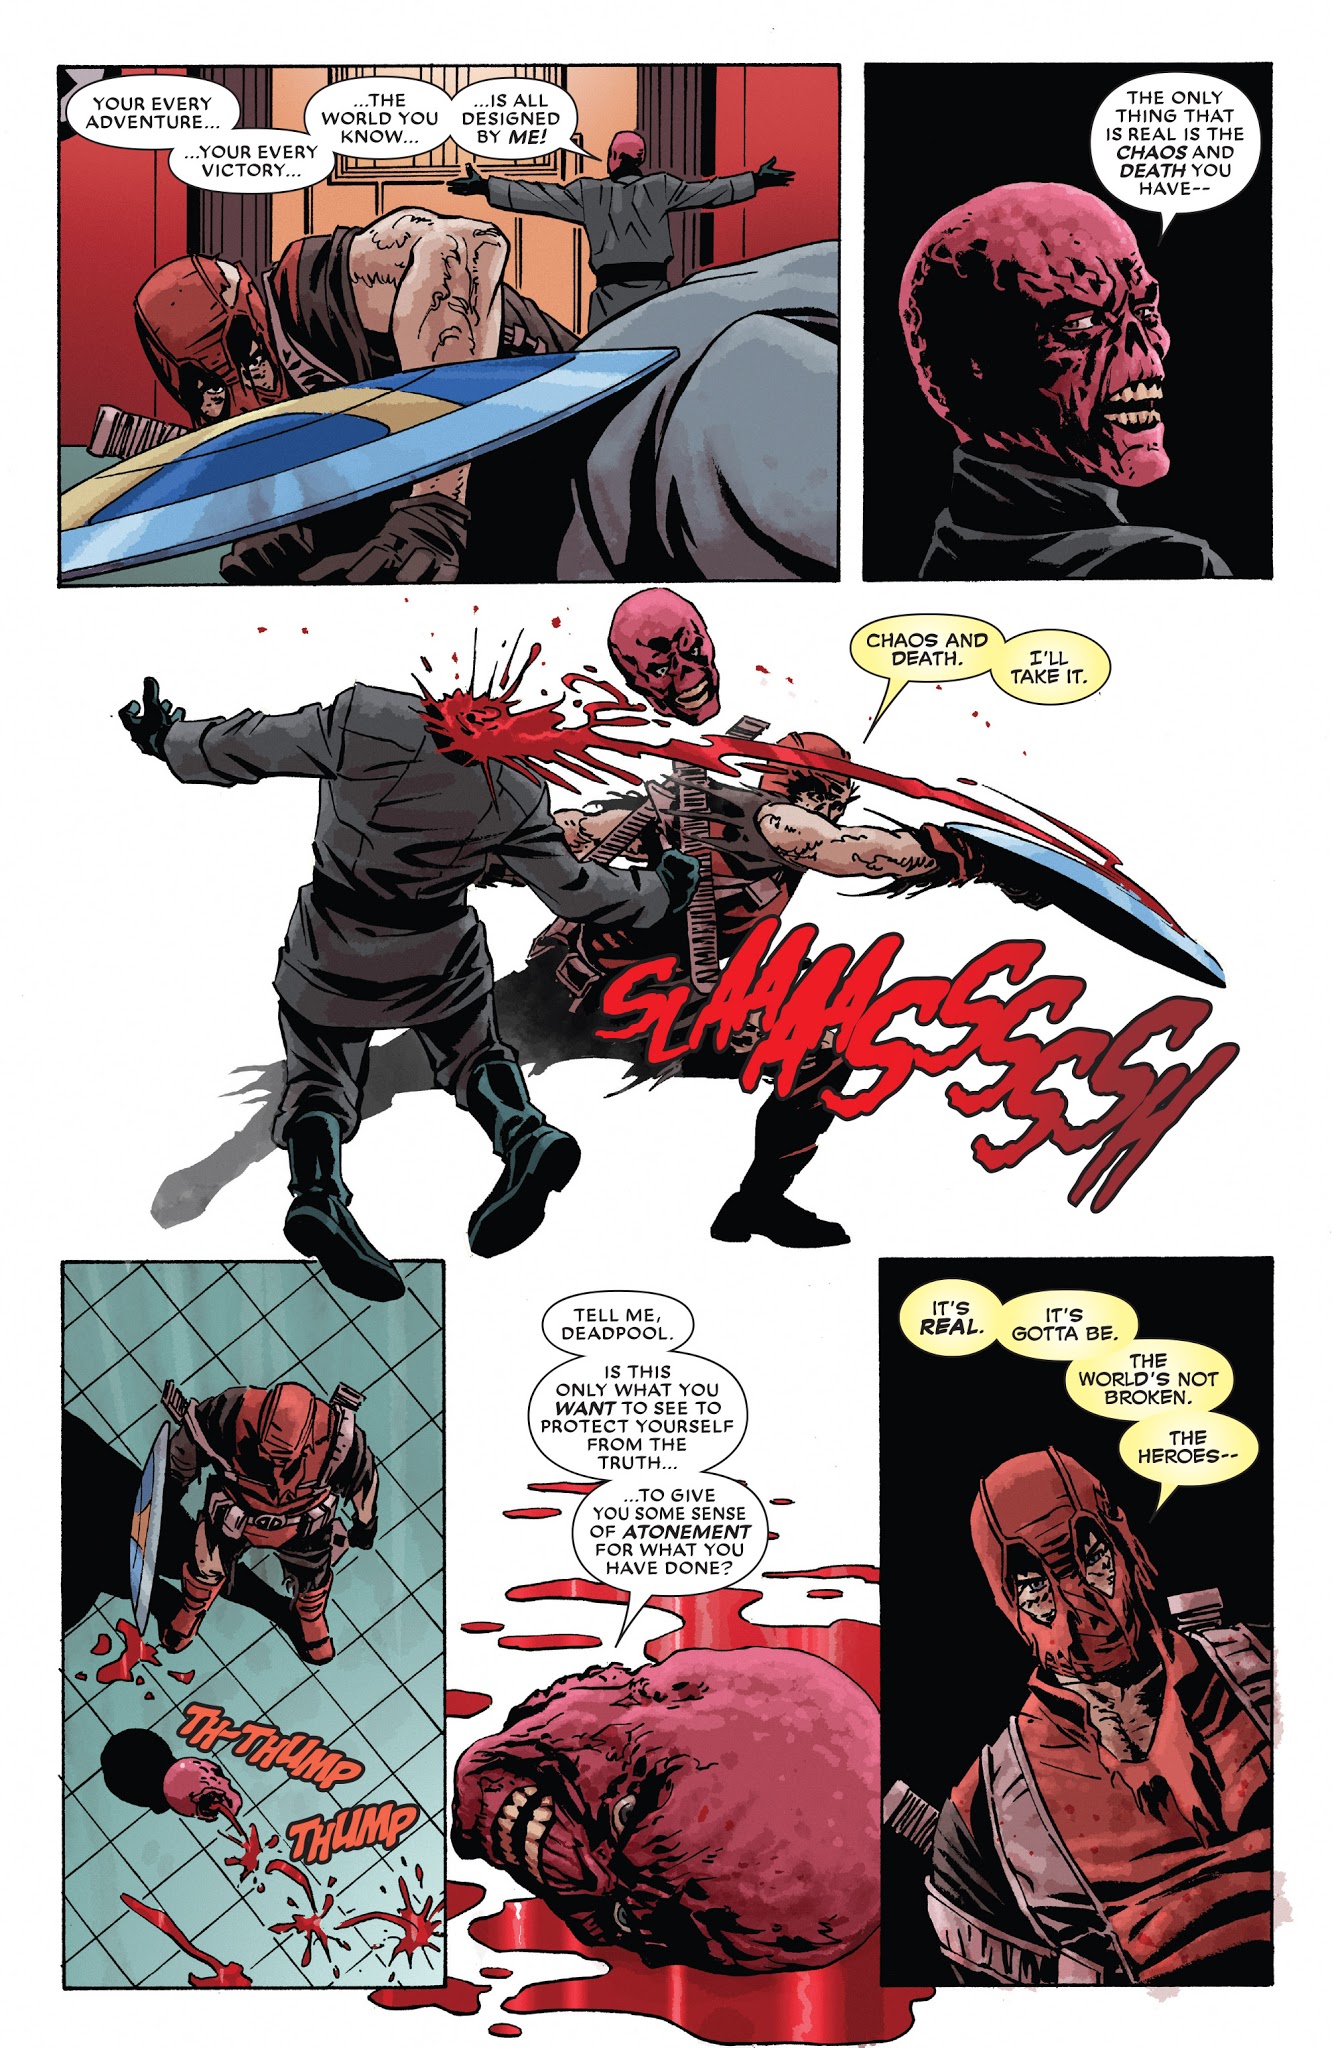 Deadpool Kills The Marvel Universe Again Issue 5 Read